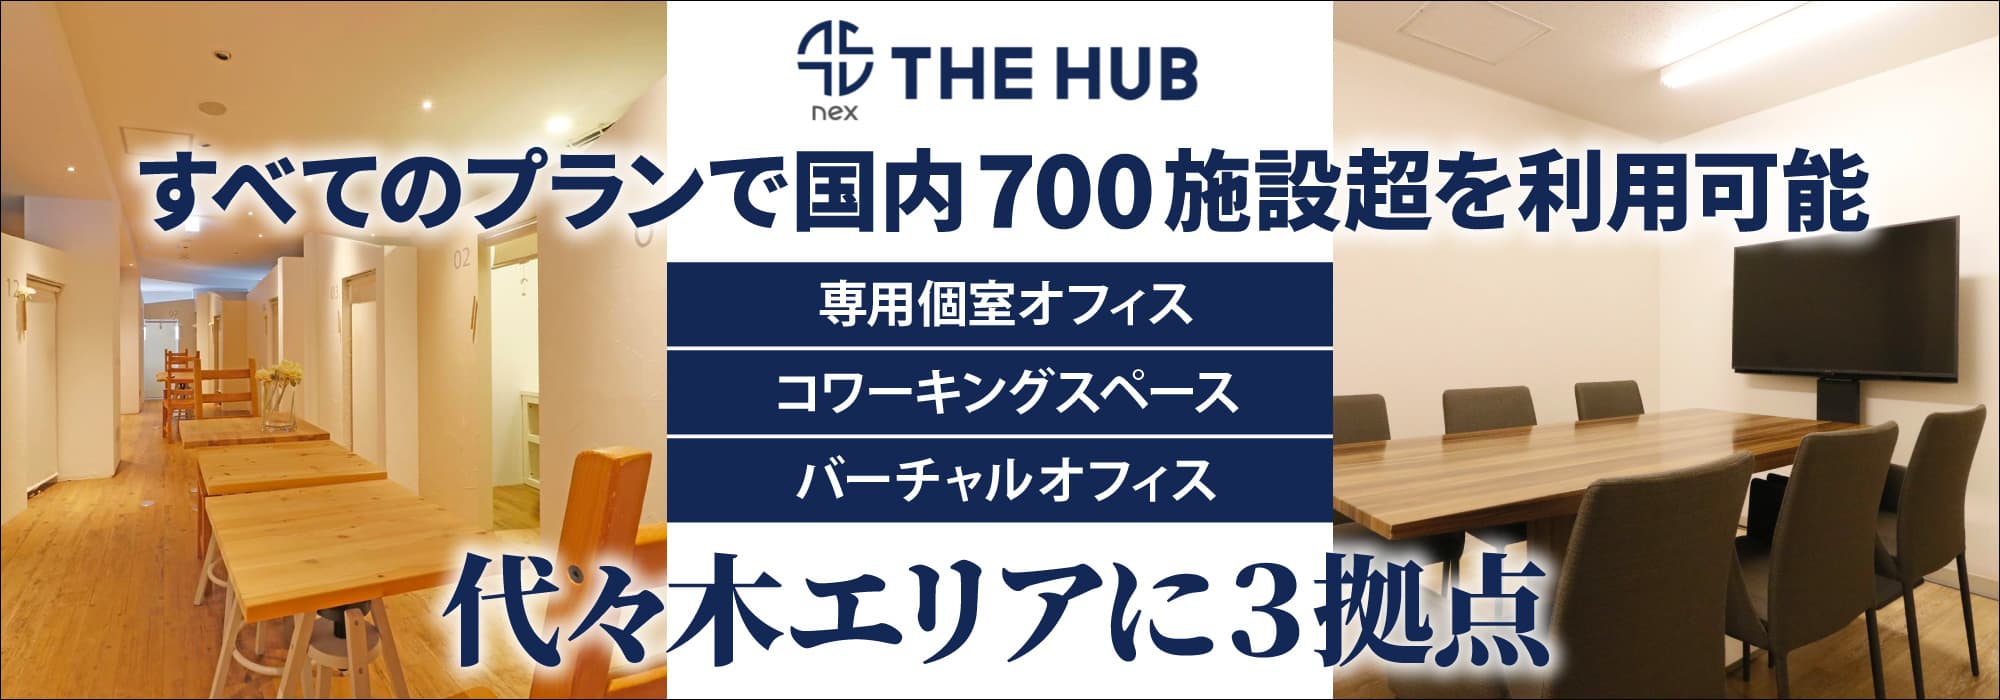 代々木エリアに３拠点、創造力と生産性を刺激するレンタルオフィス【THE HUB】すべてのプランで国内700施設超を利用可能